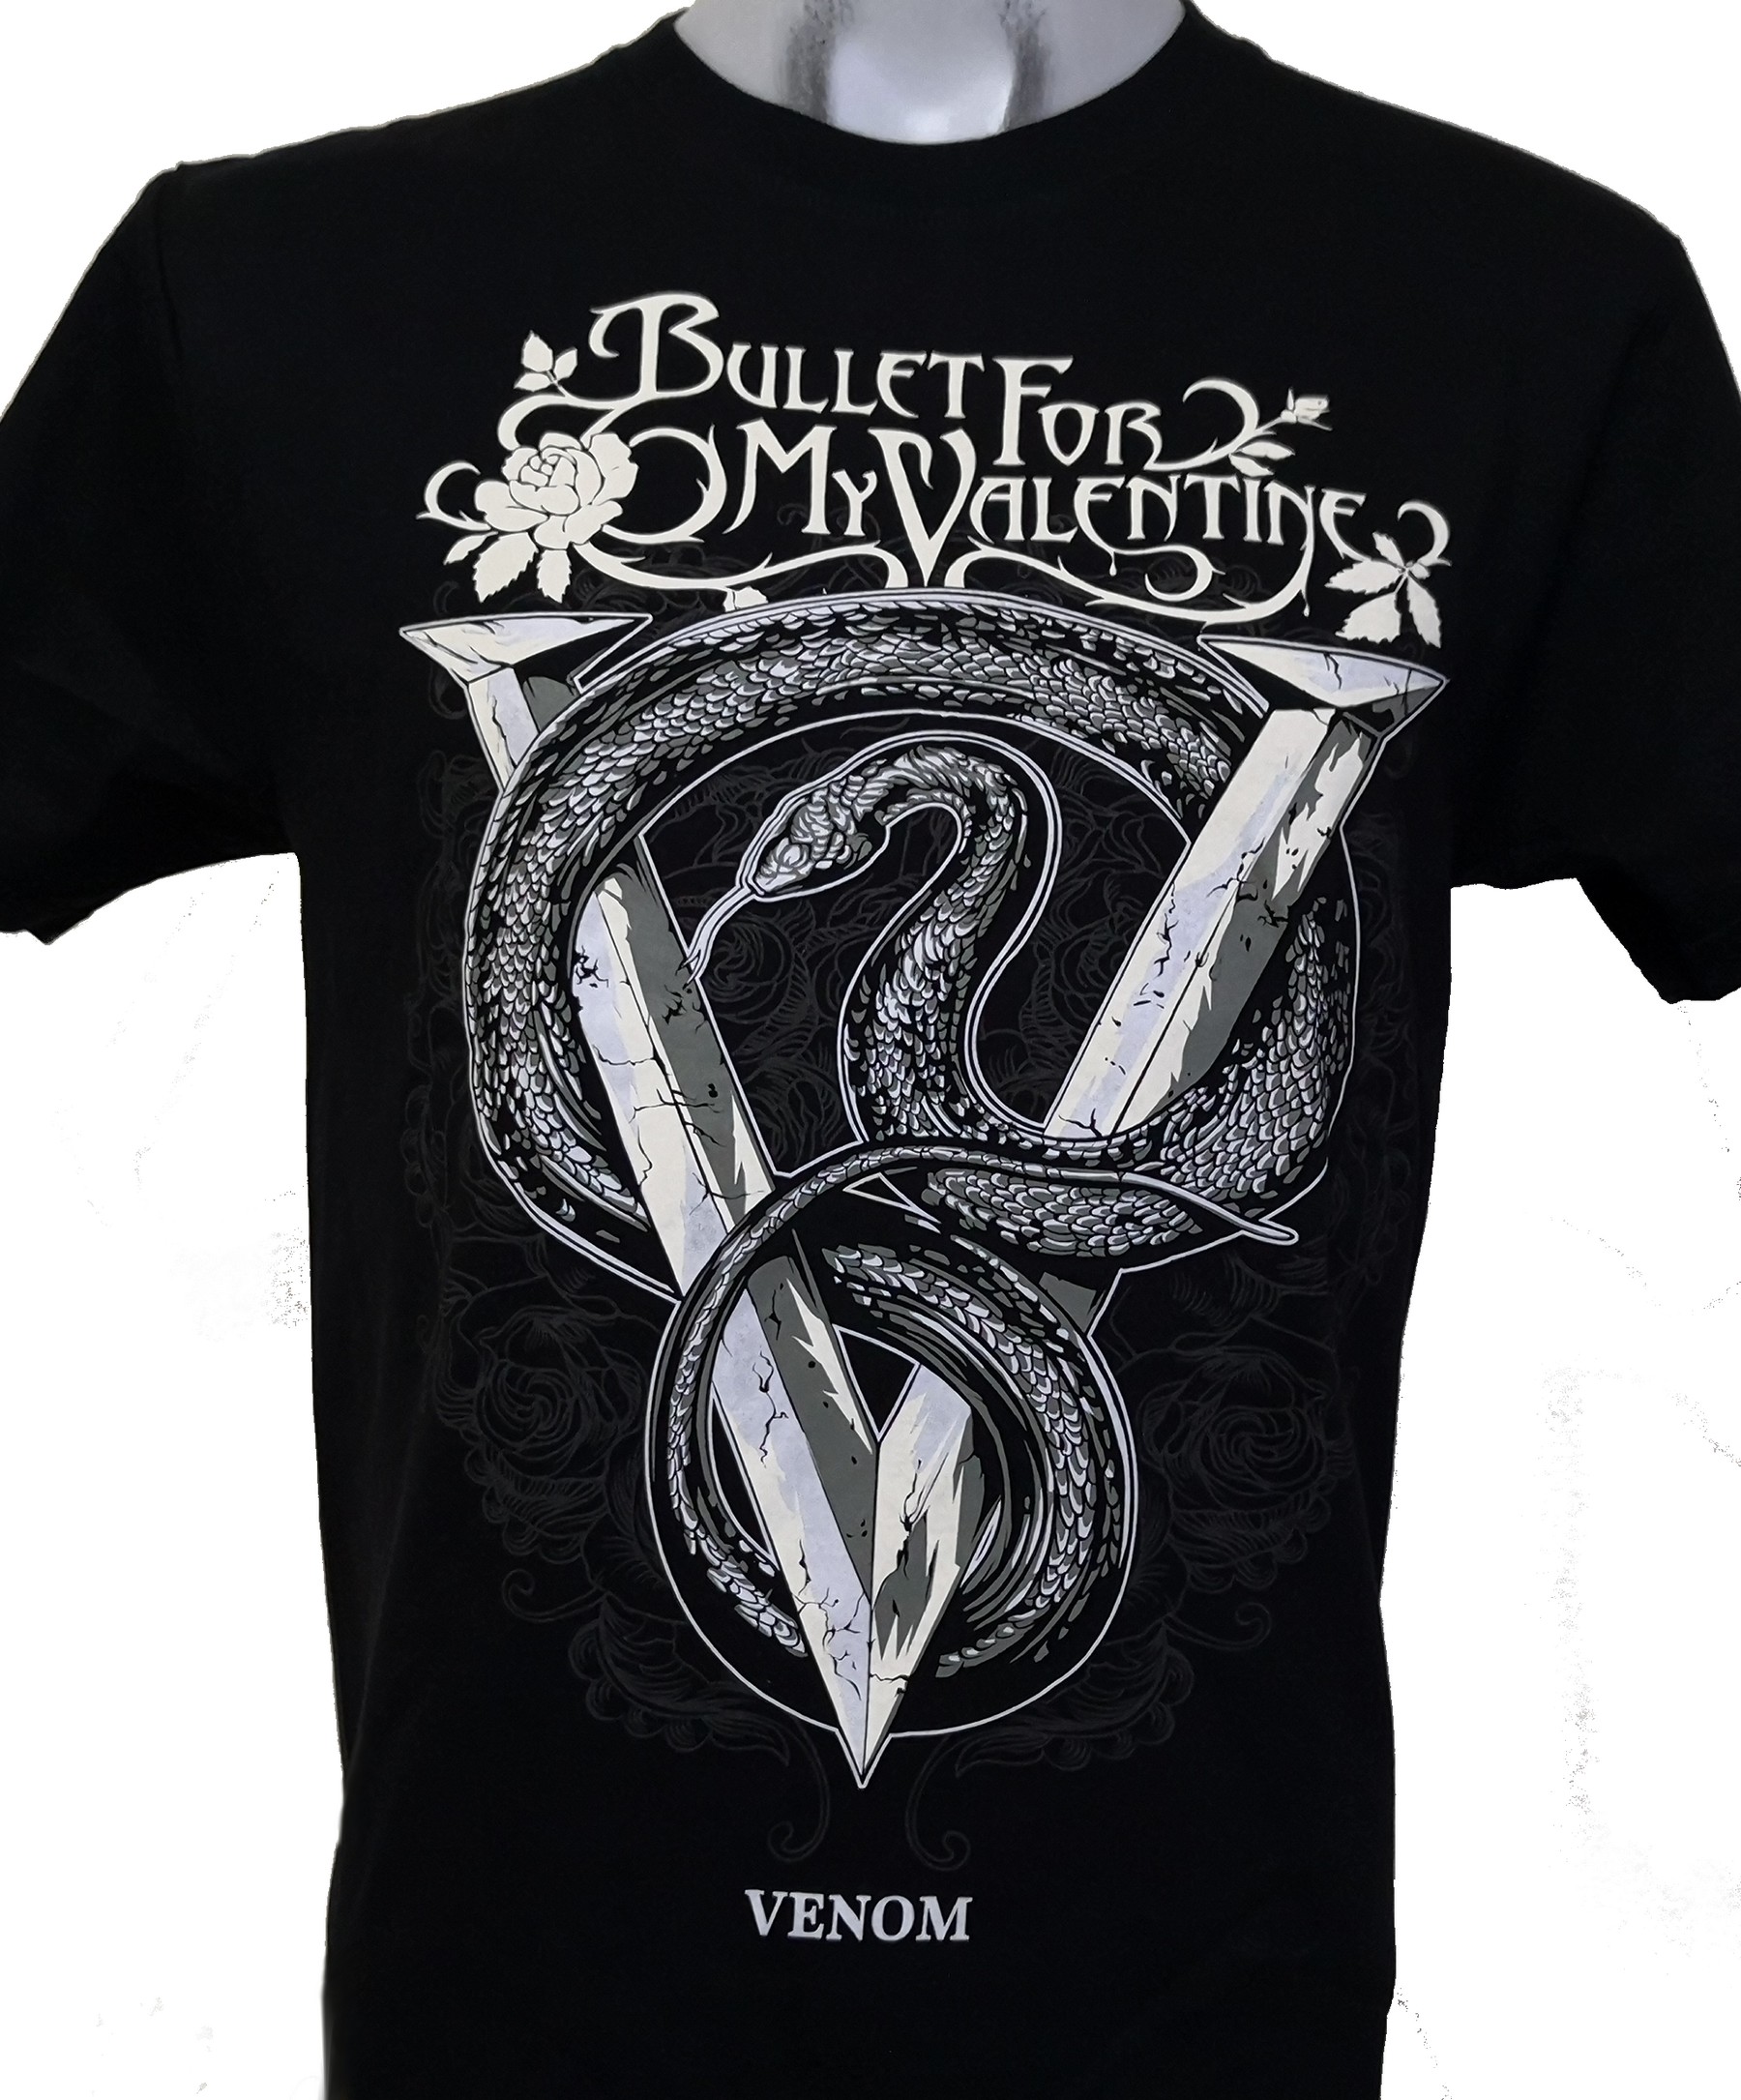 Bullet For My Valentine t-shirt Venom size L – RoxxBKK